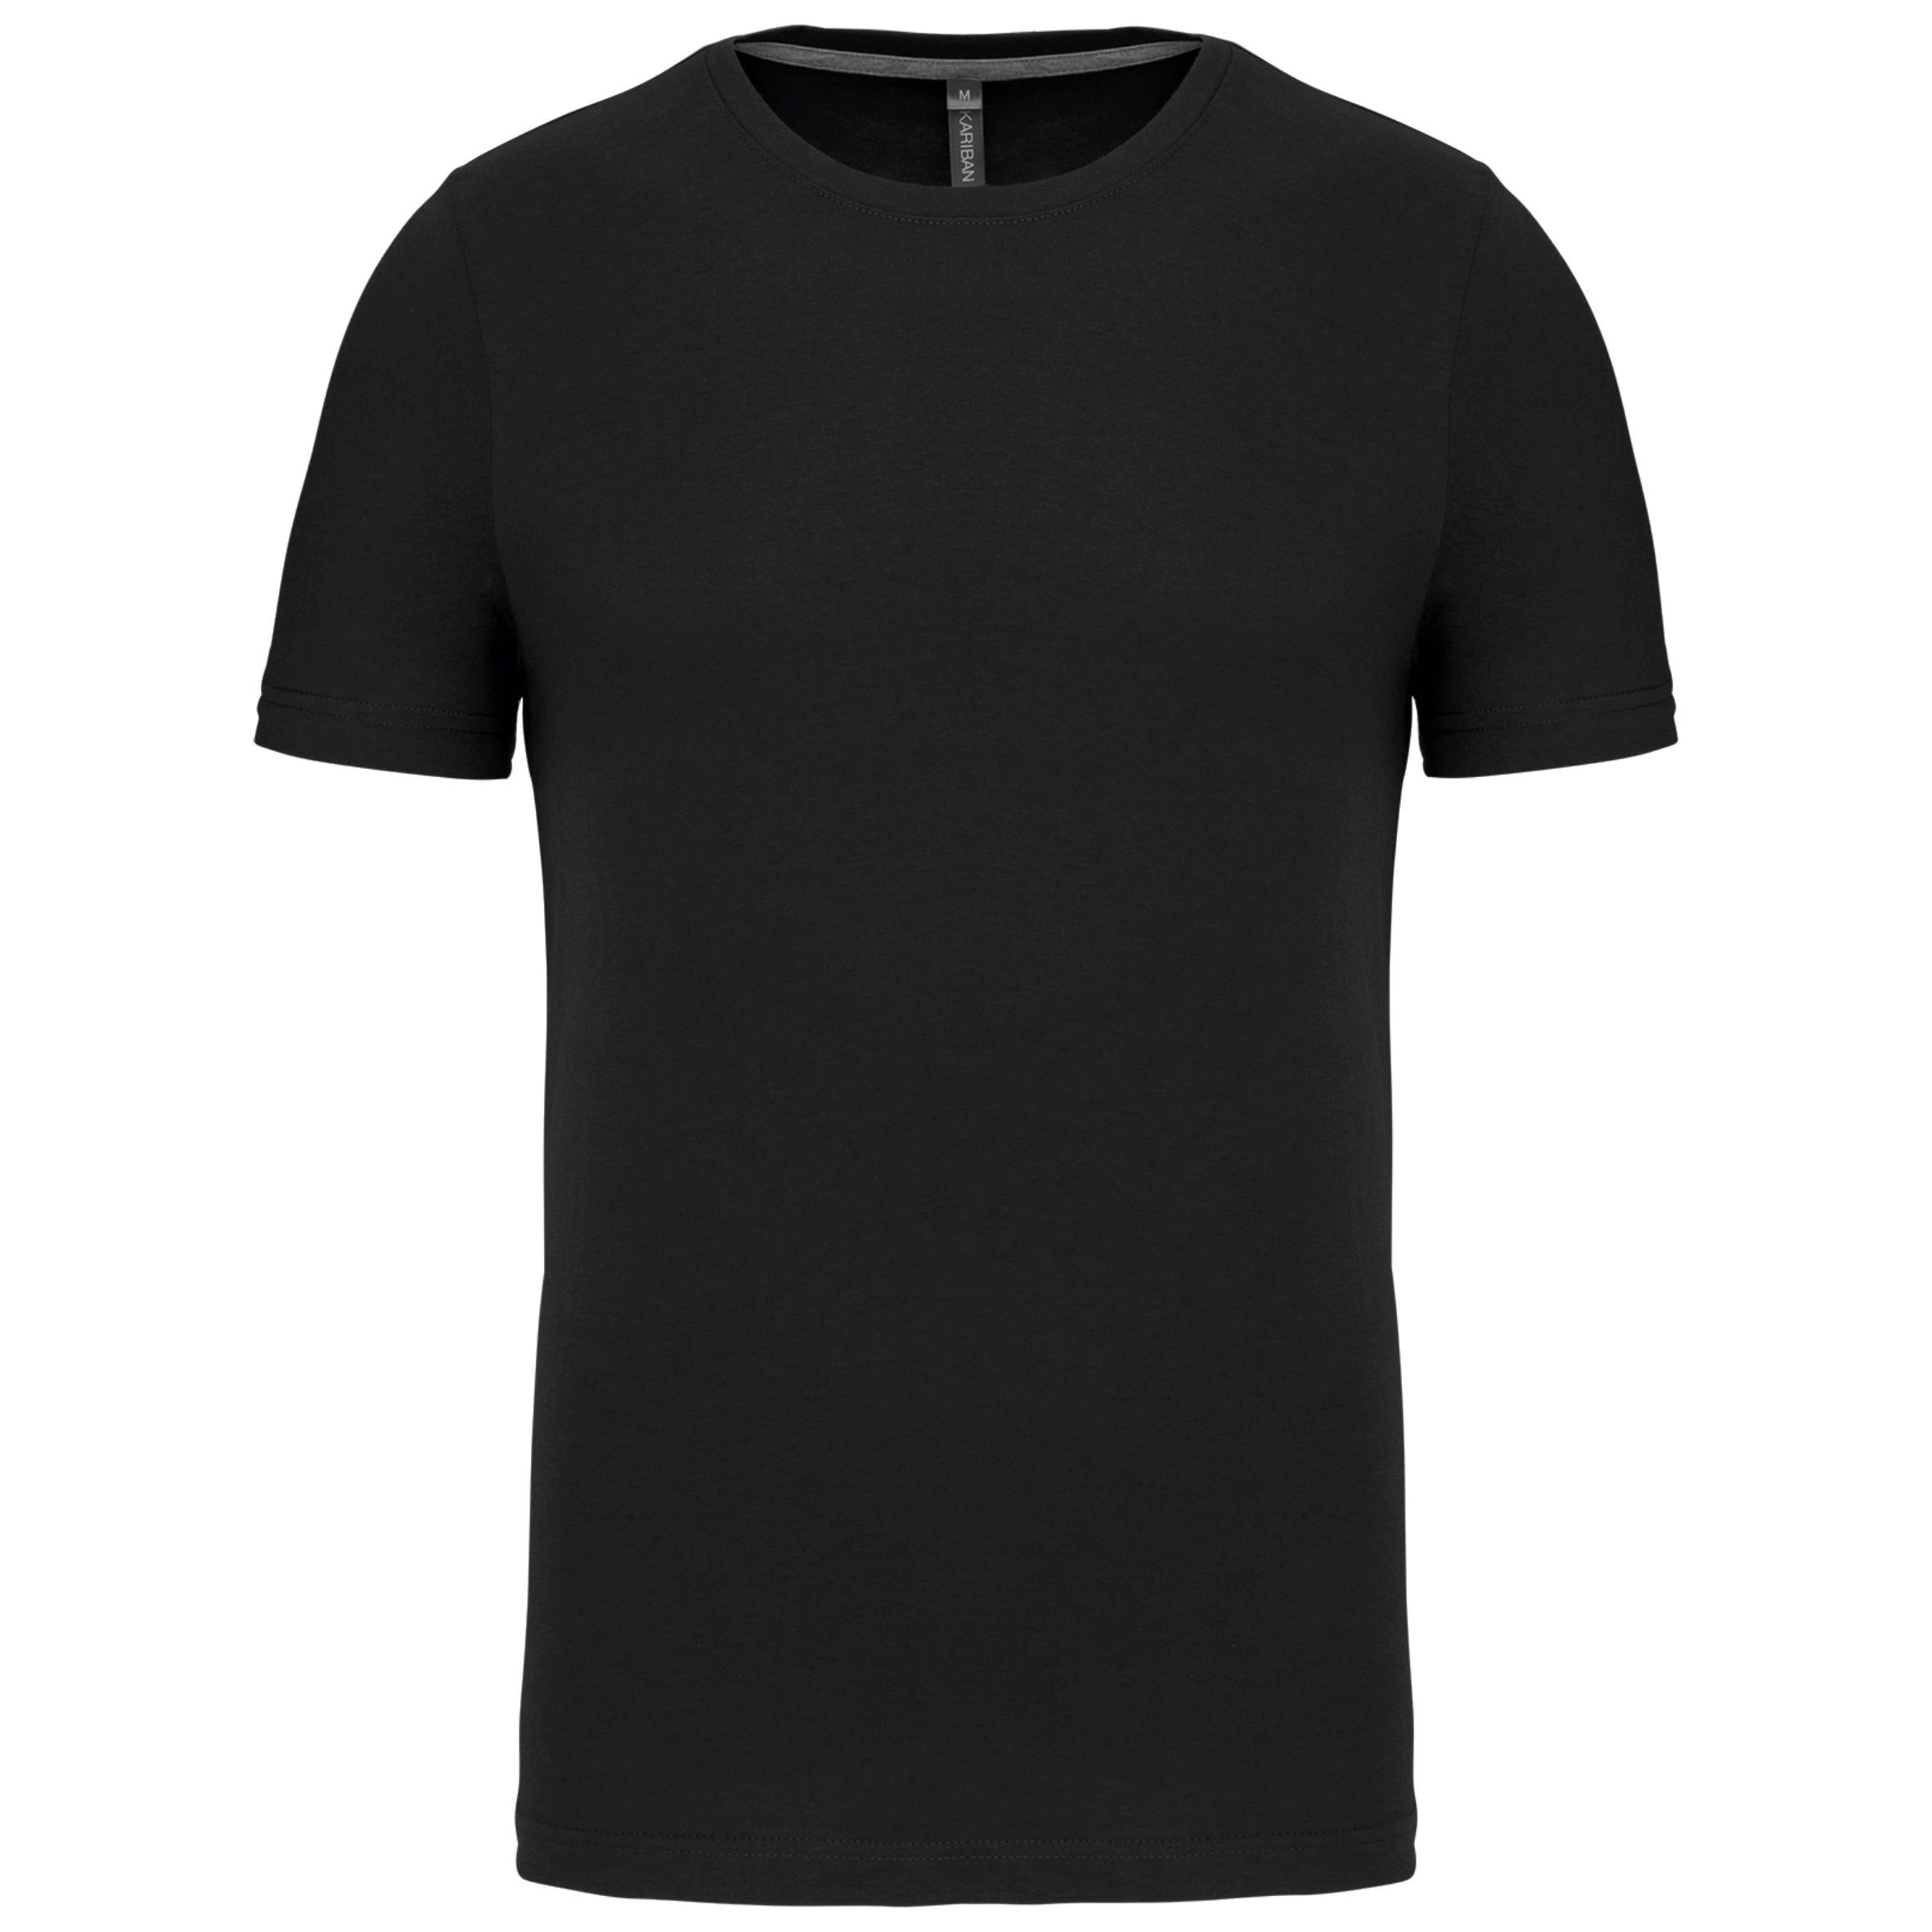 T-shirt thermique manches longues - TOP SOUL - Diadora